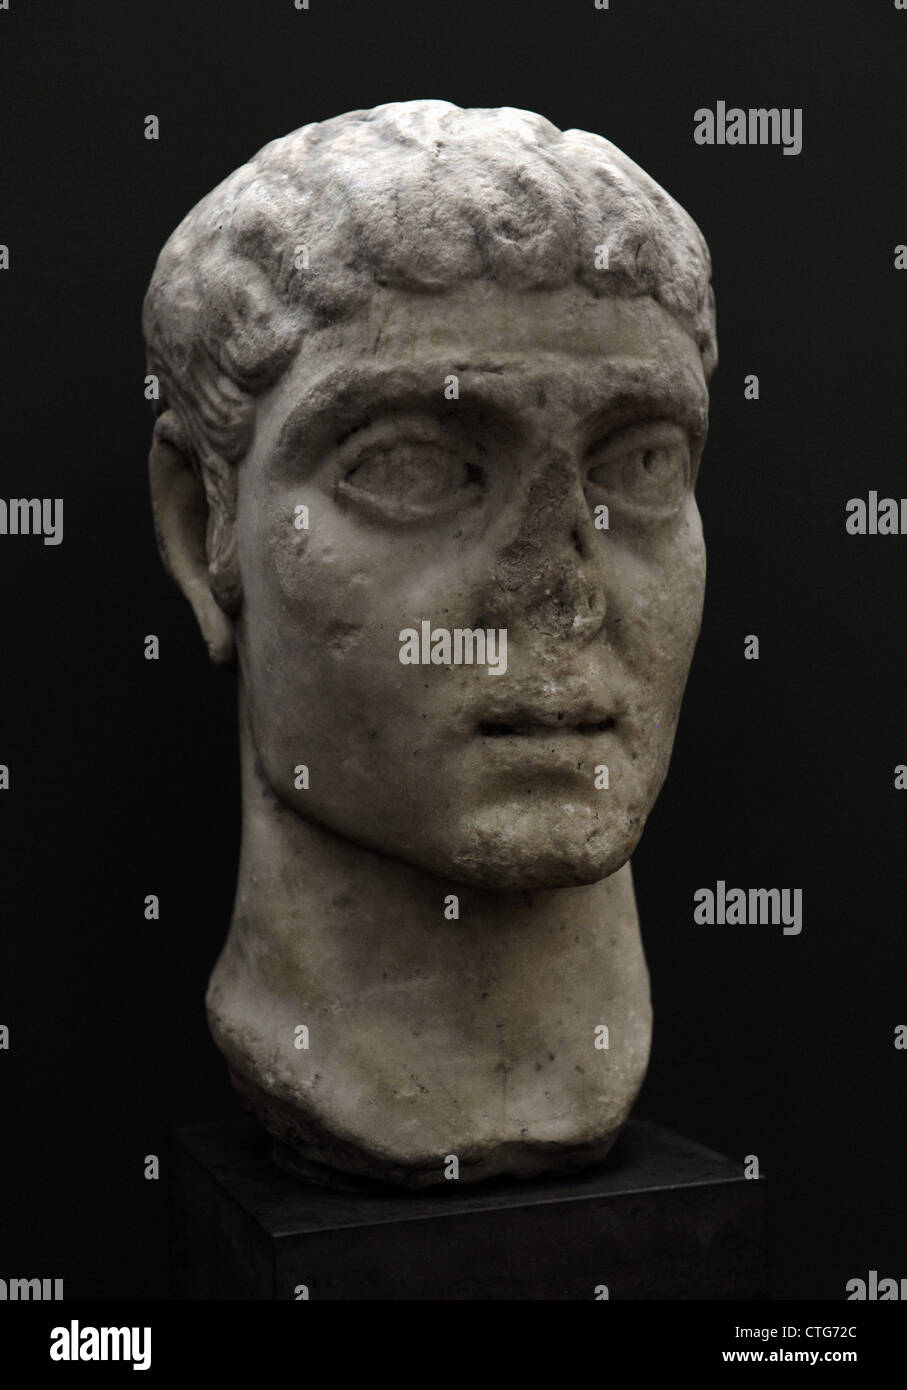 Constantino I el Grande (272-337). El emperador romano. (309-337). Mármol. C. 315. Retrato de Roma. Carlsberg Glyptotek Museum. Foto de stock